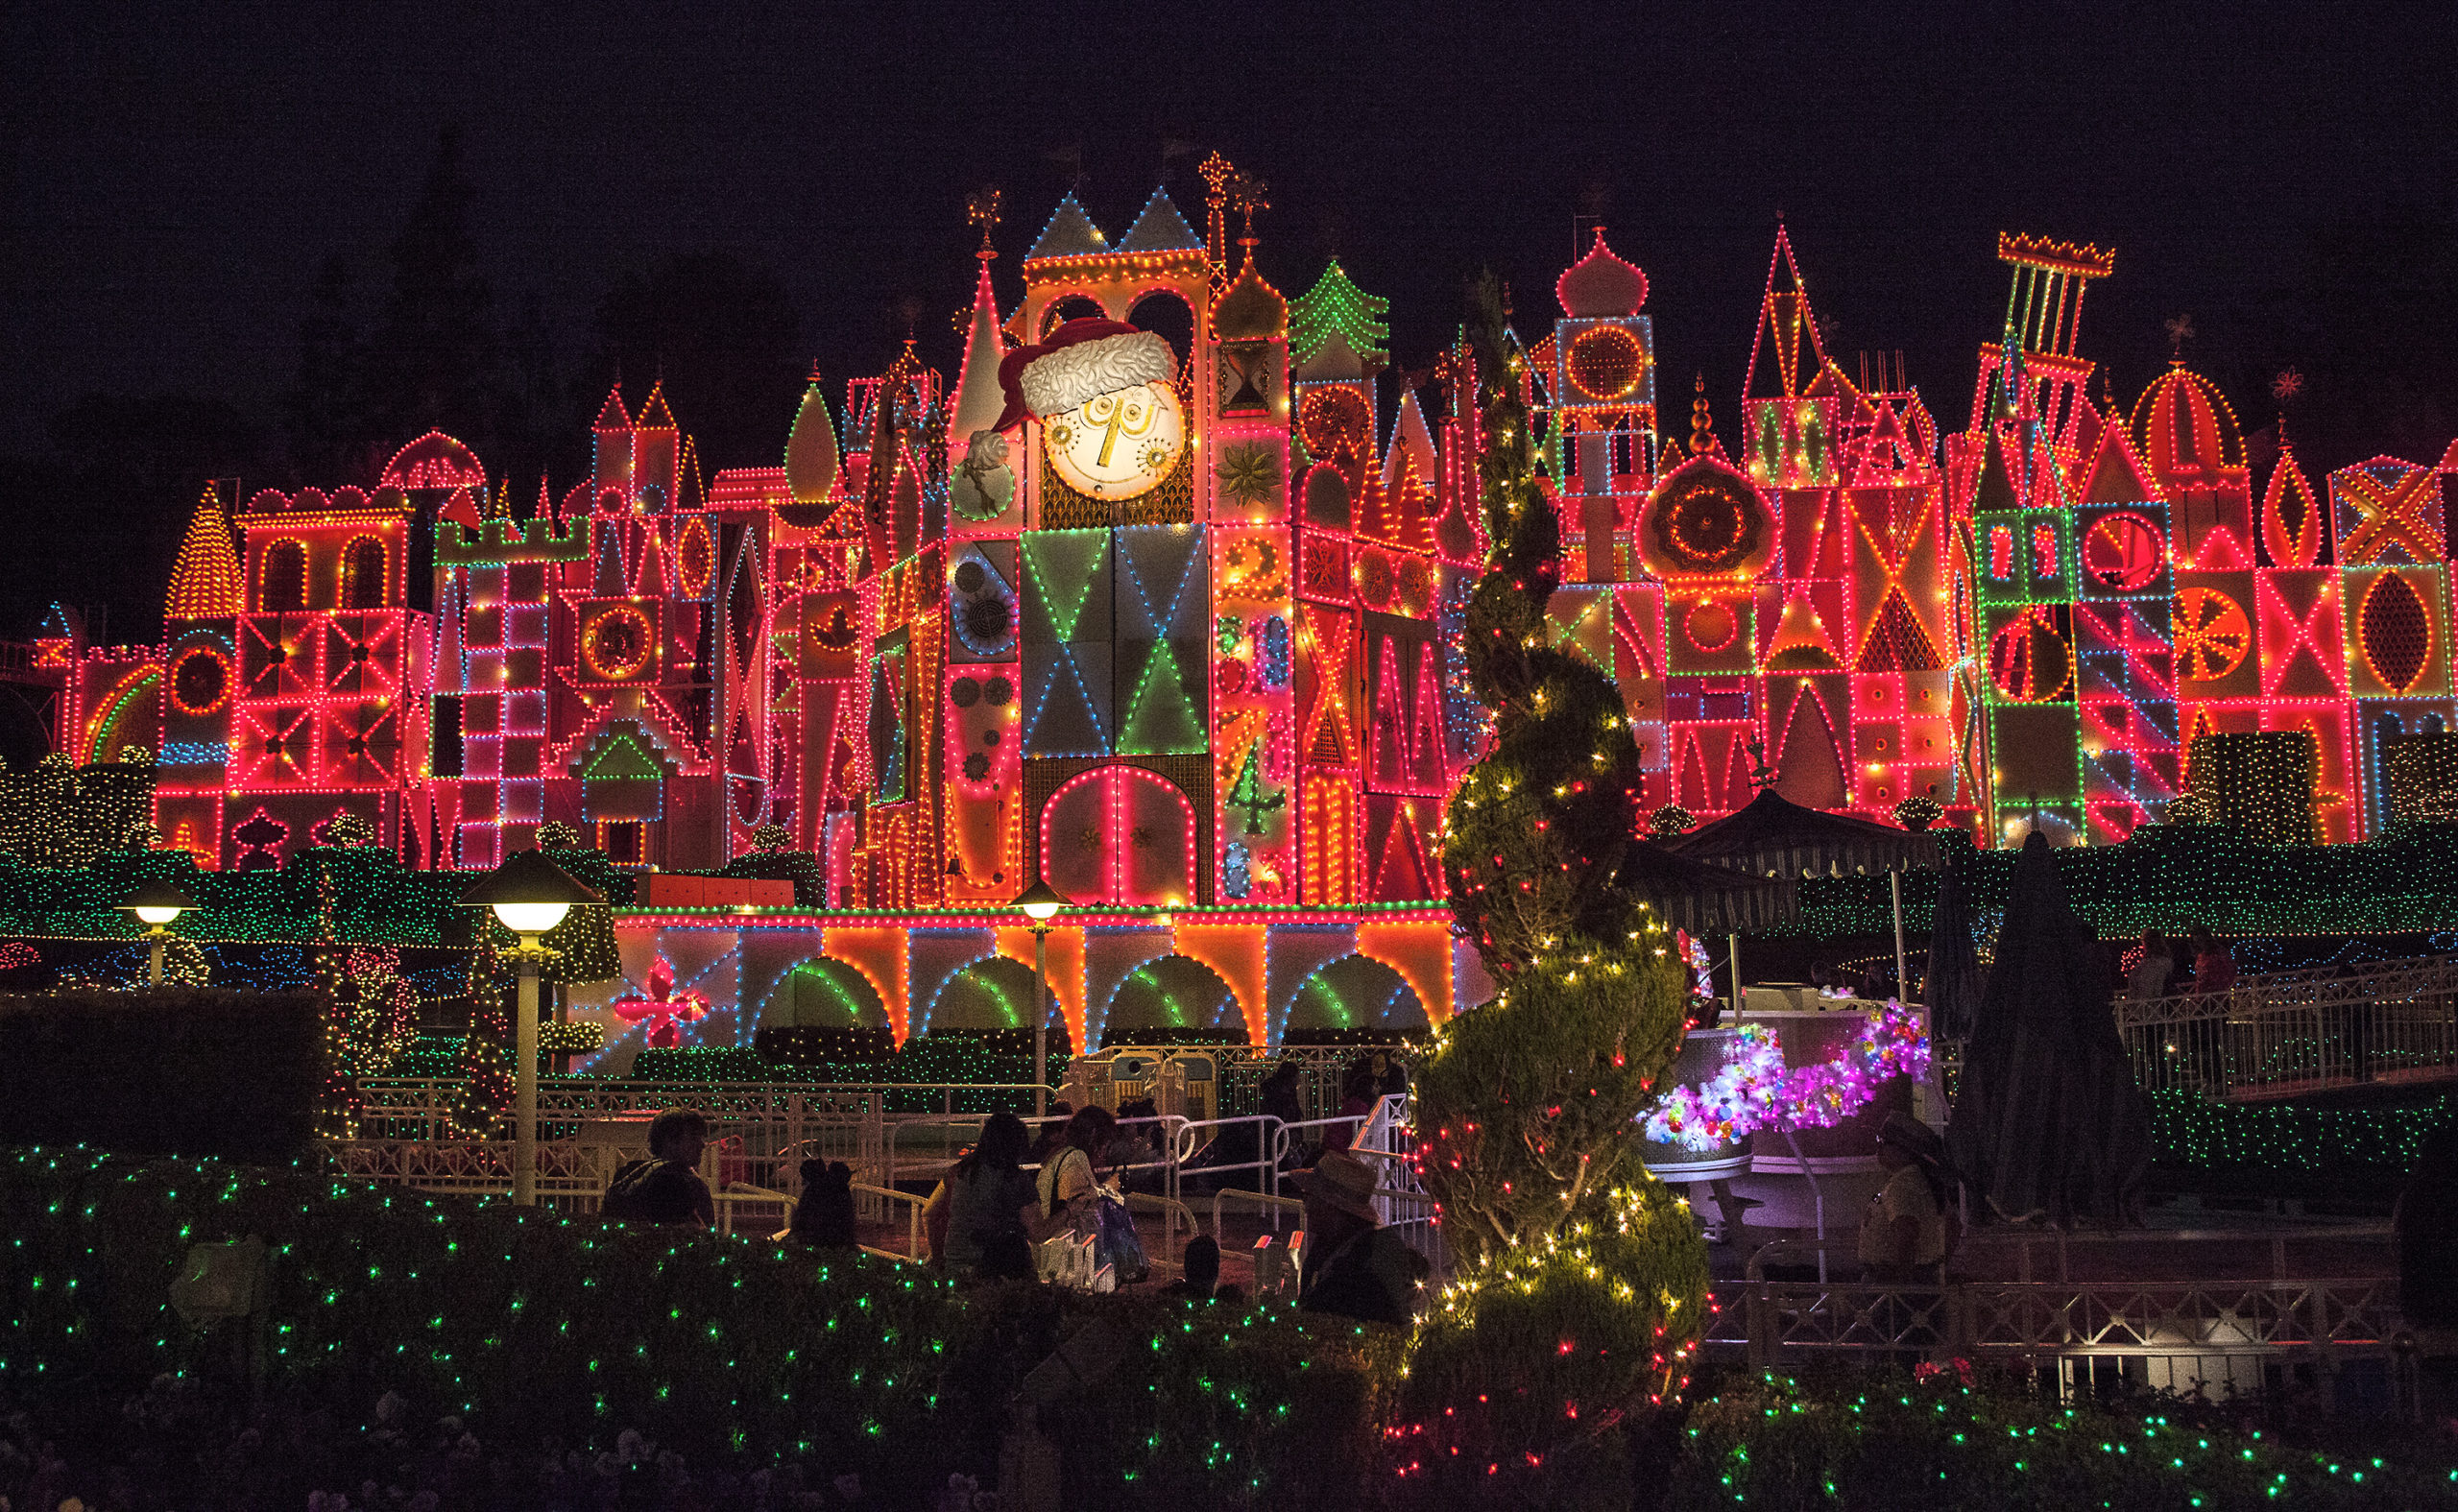 It's a Small World Holiday display at Disneyland